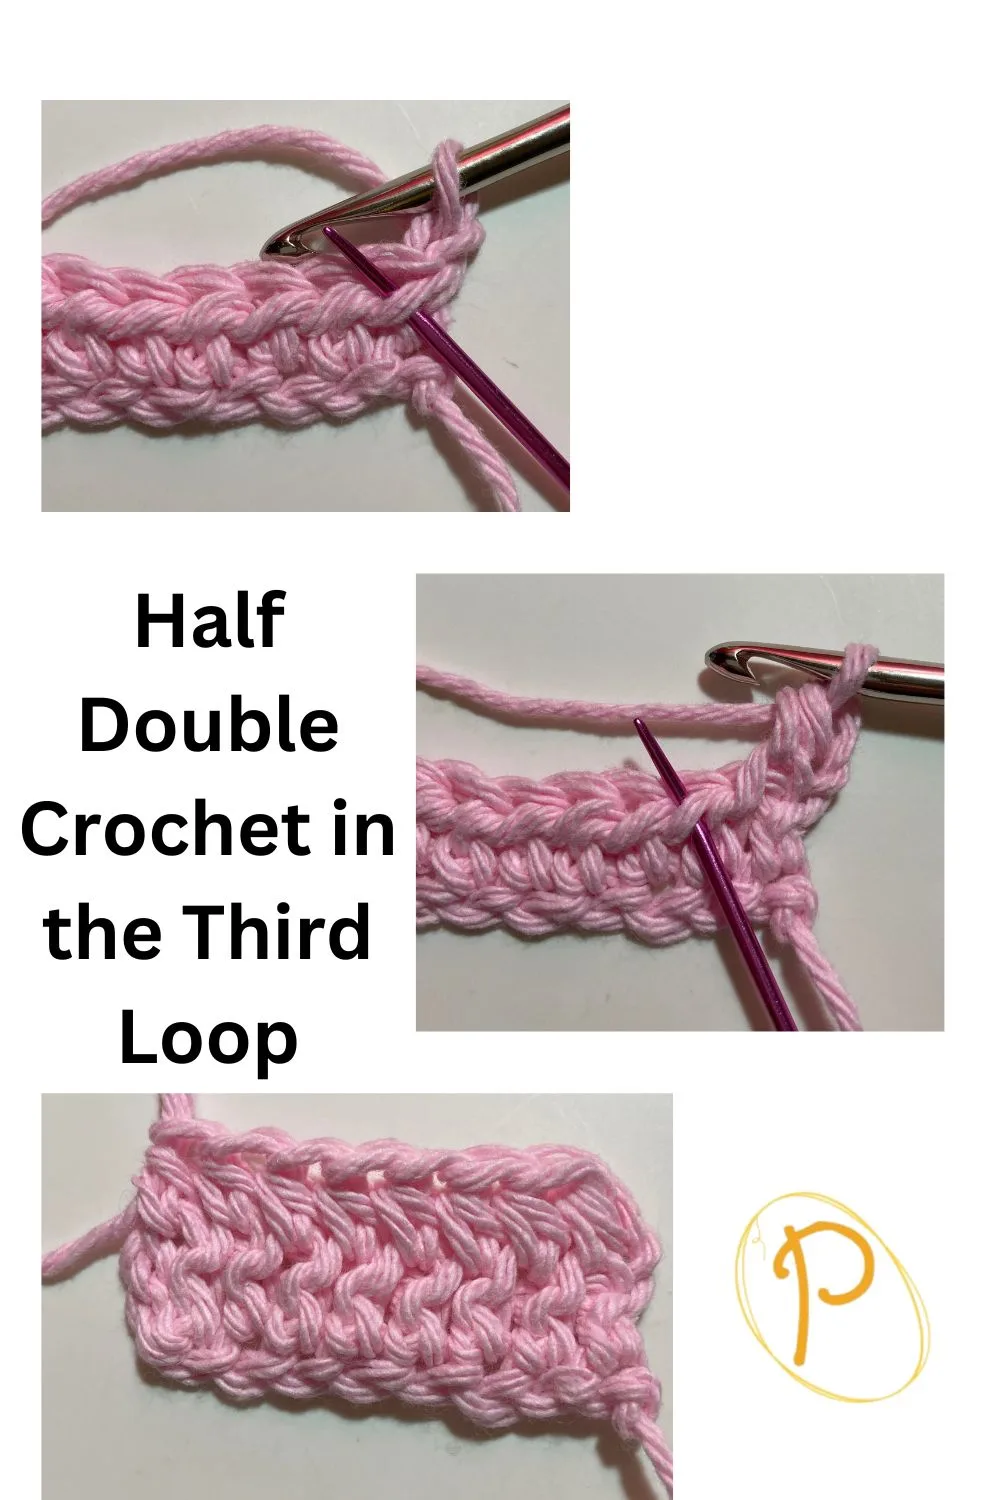 Half Double Crochet in the Third Loop